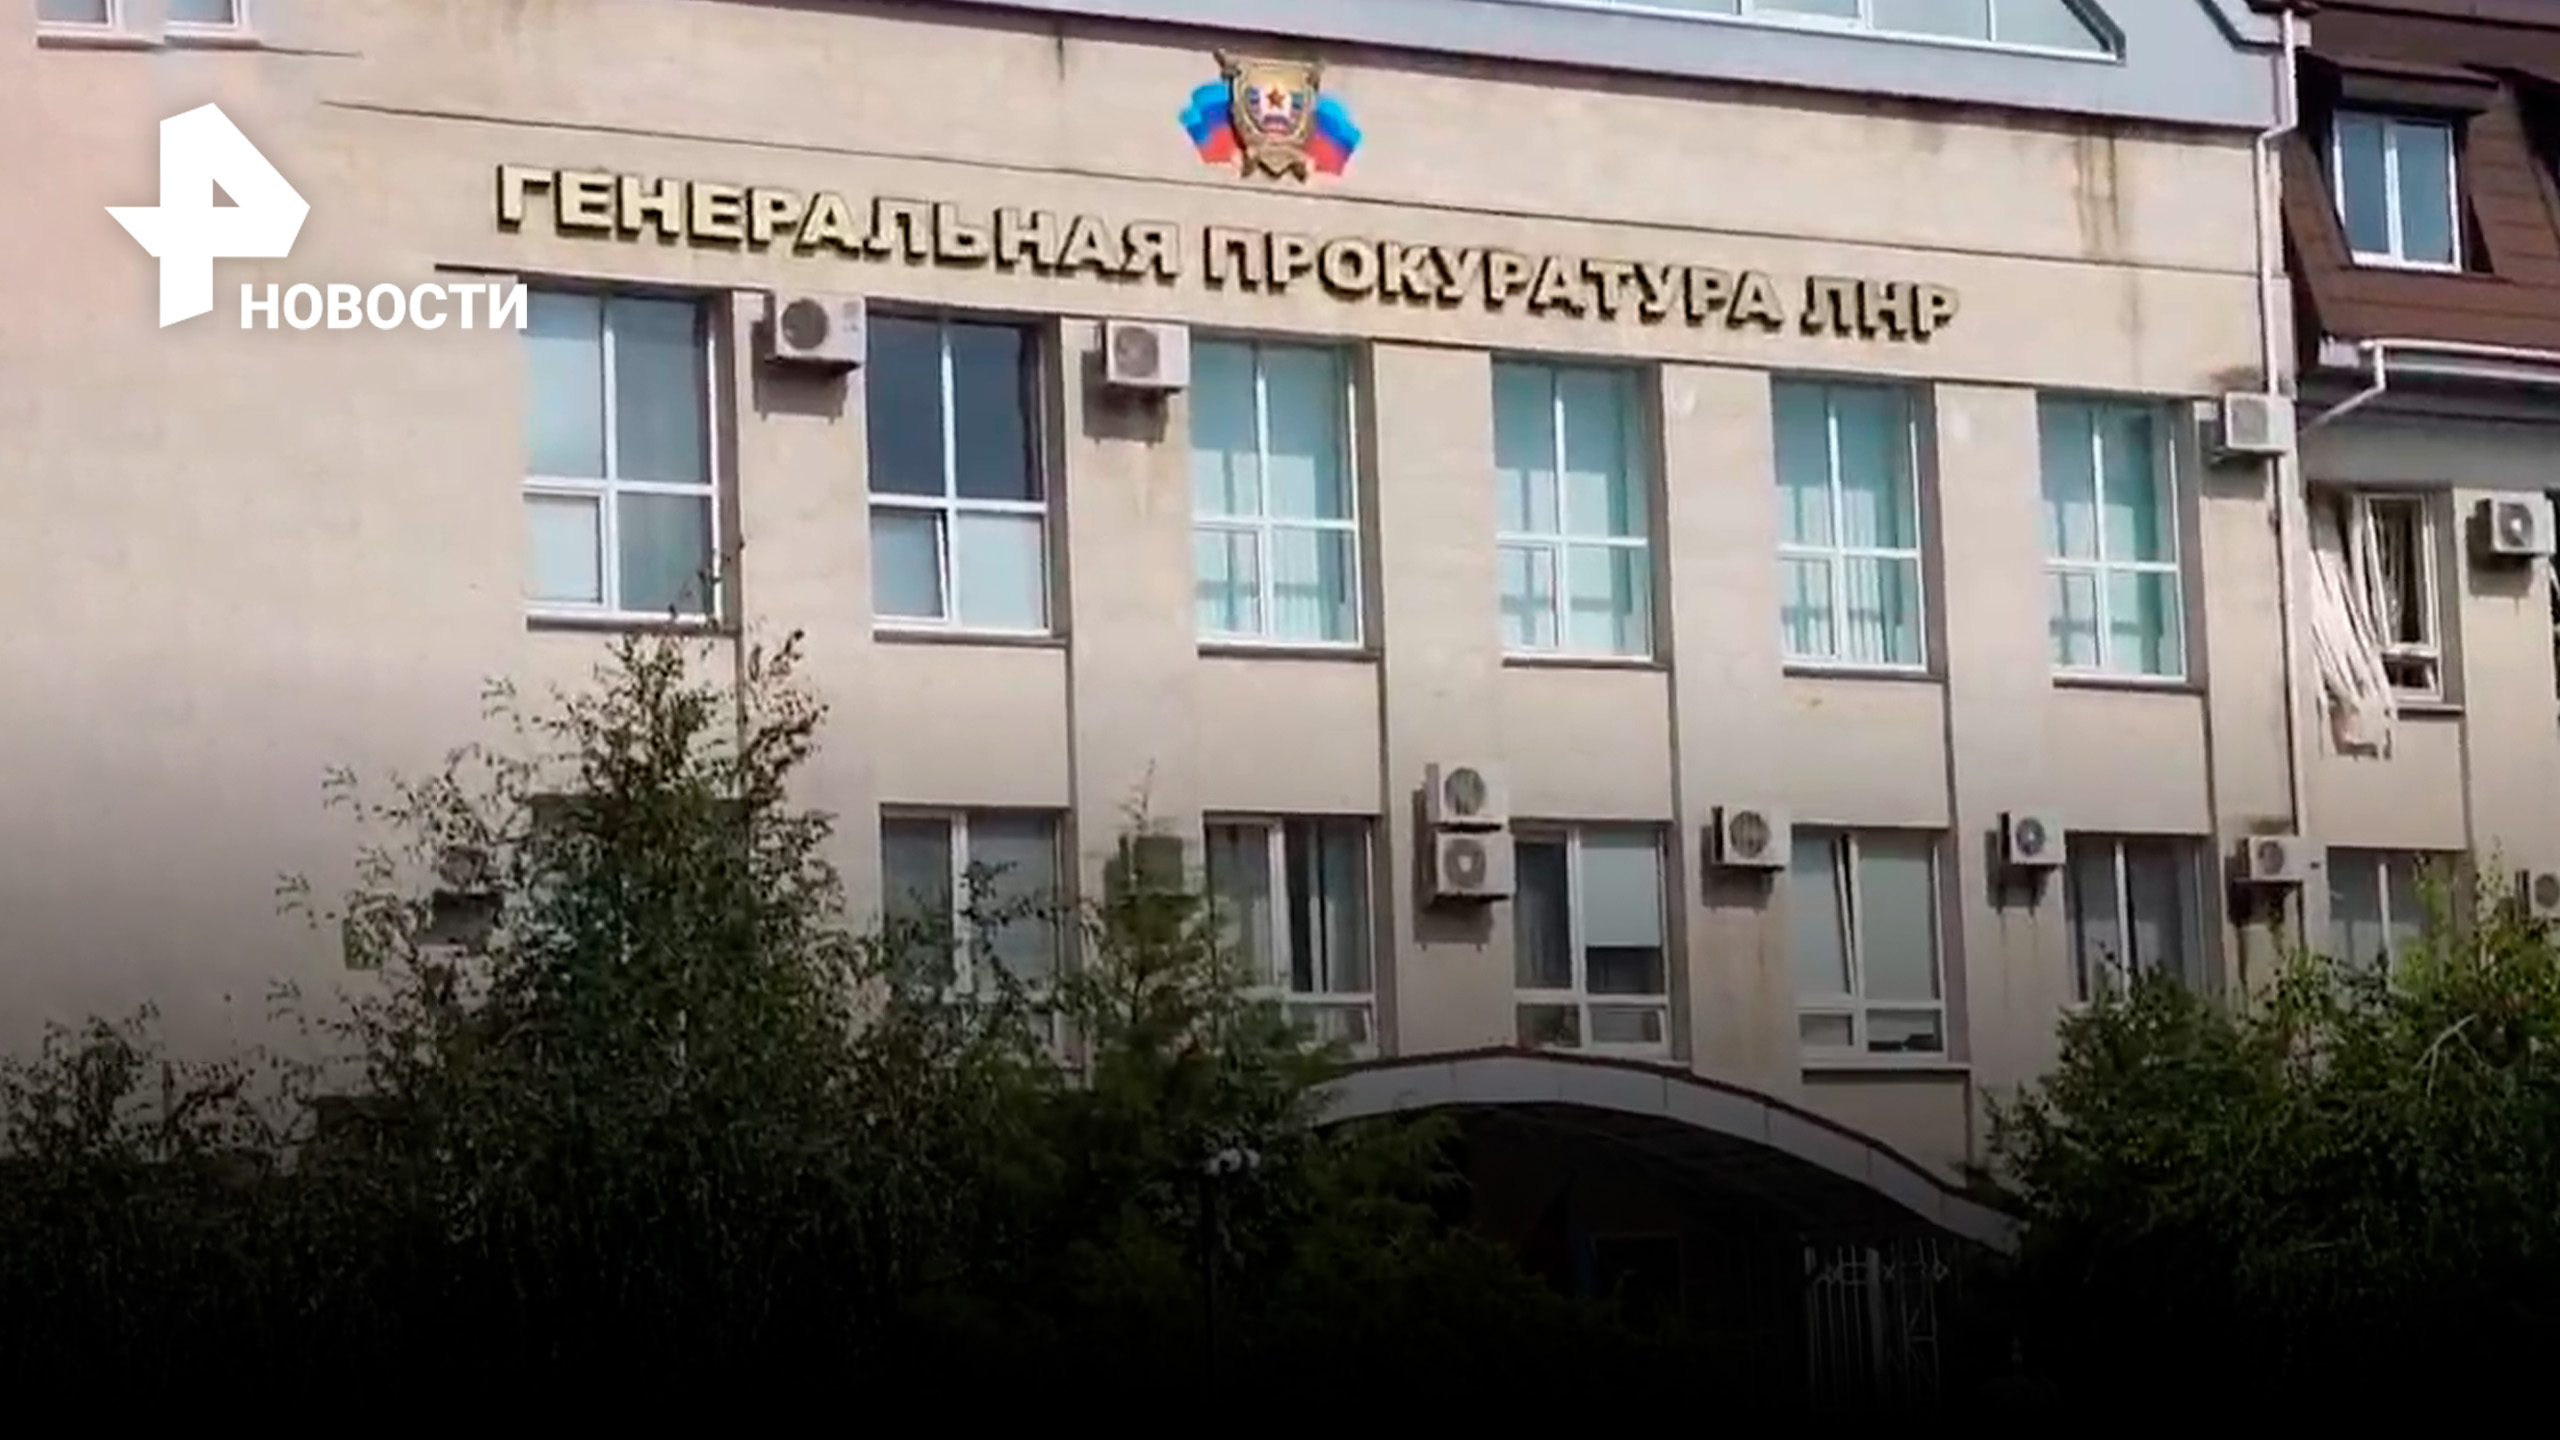 Сообщения о взрыве в центре Луганска: генпрокуратура была целью? / РЕН Новости